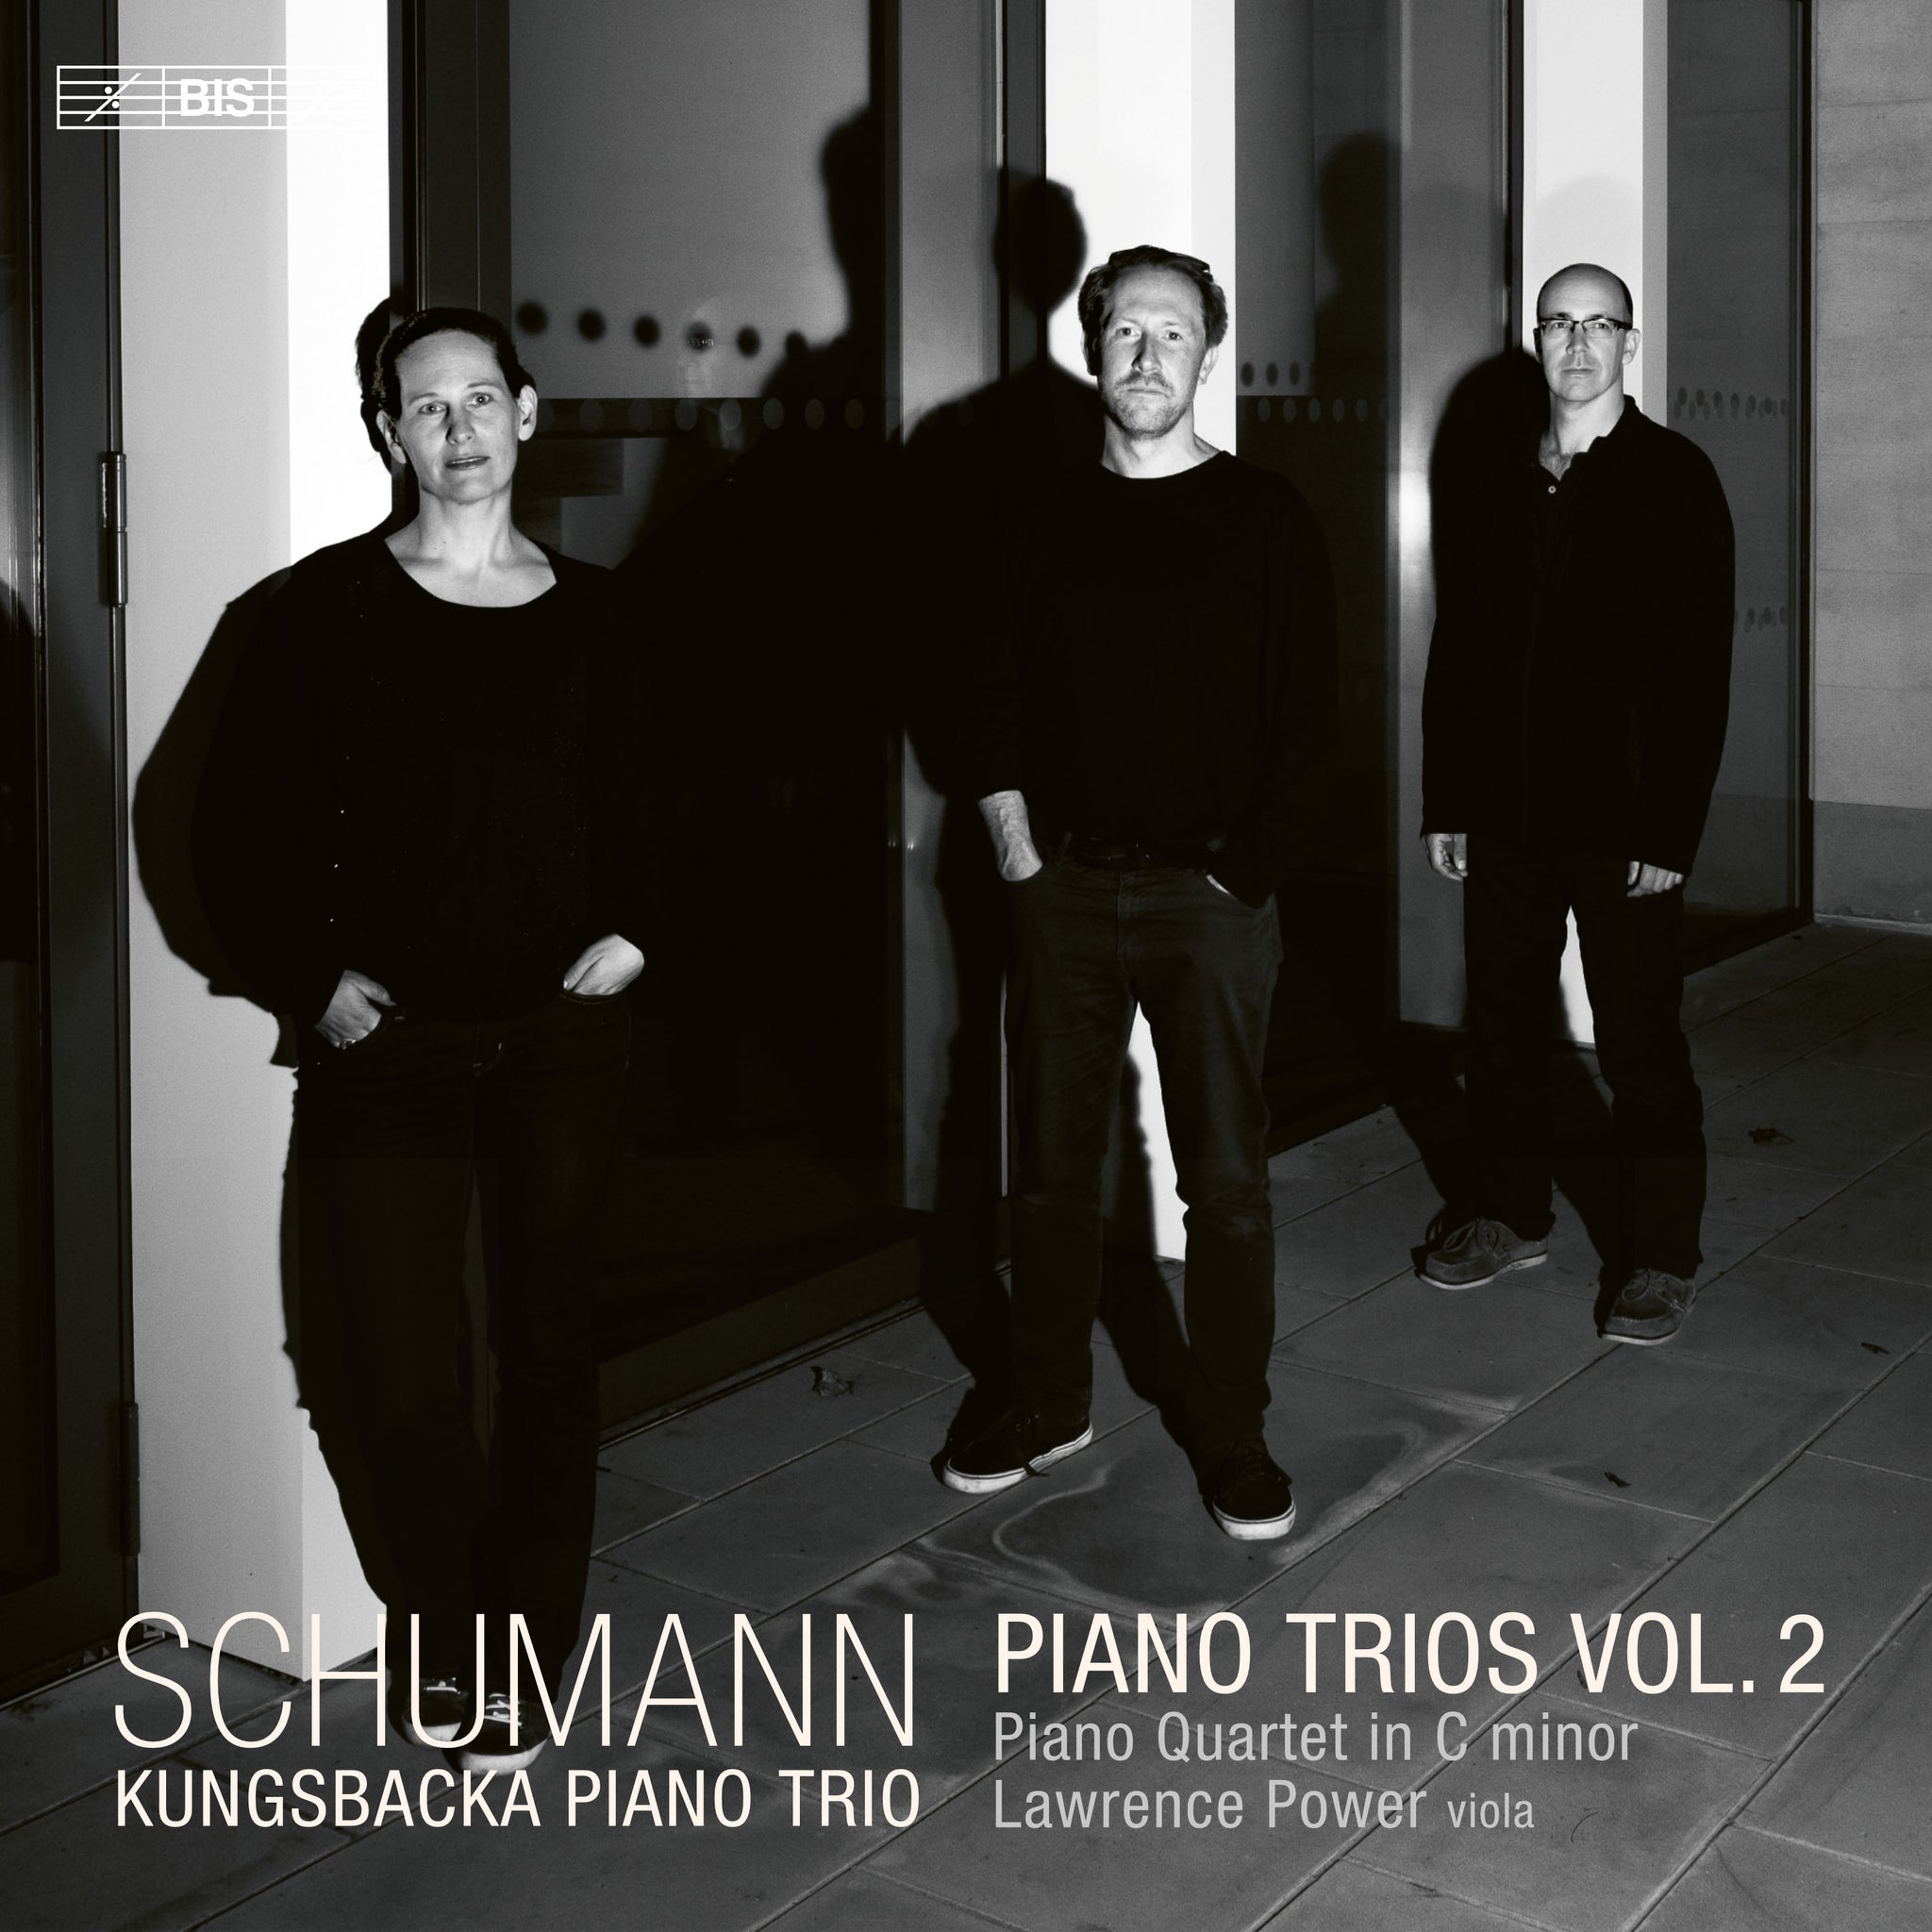 Schumann: Piano Trios, Vol. 2 / Kungsbacka Piano Trio